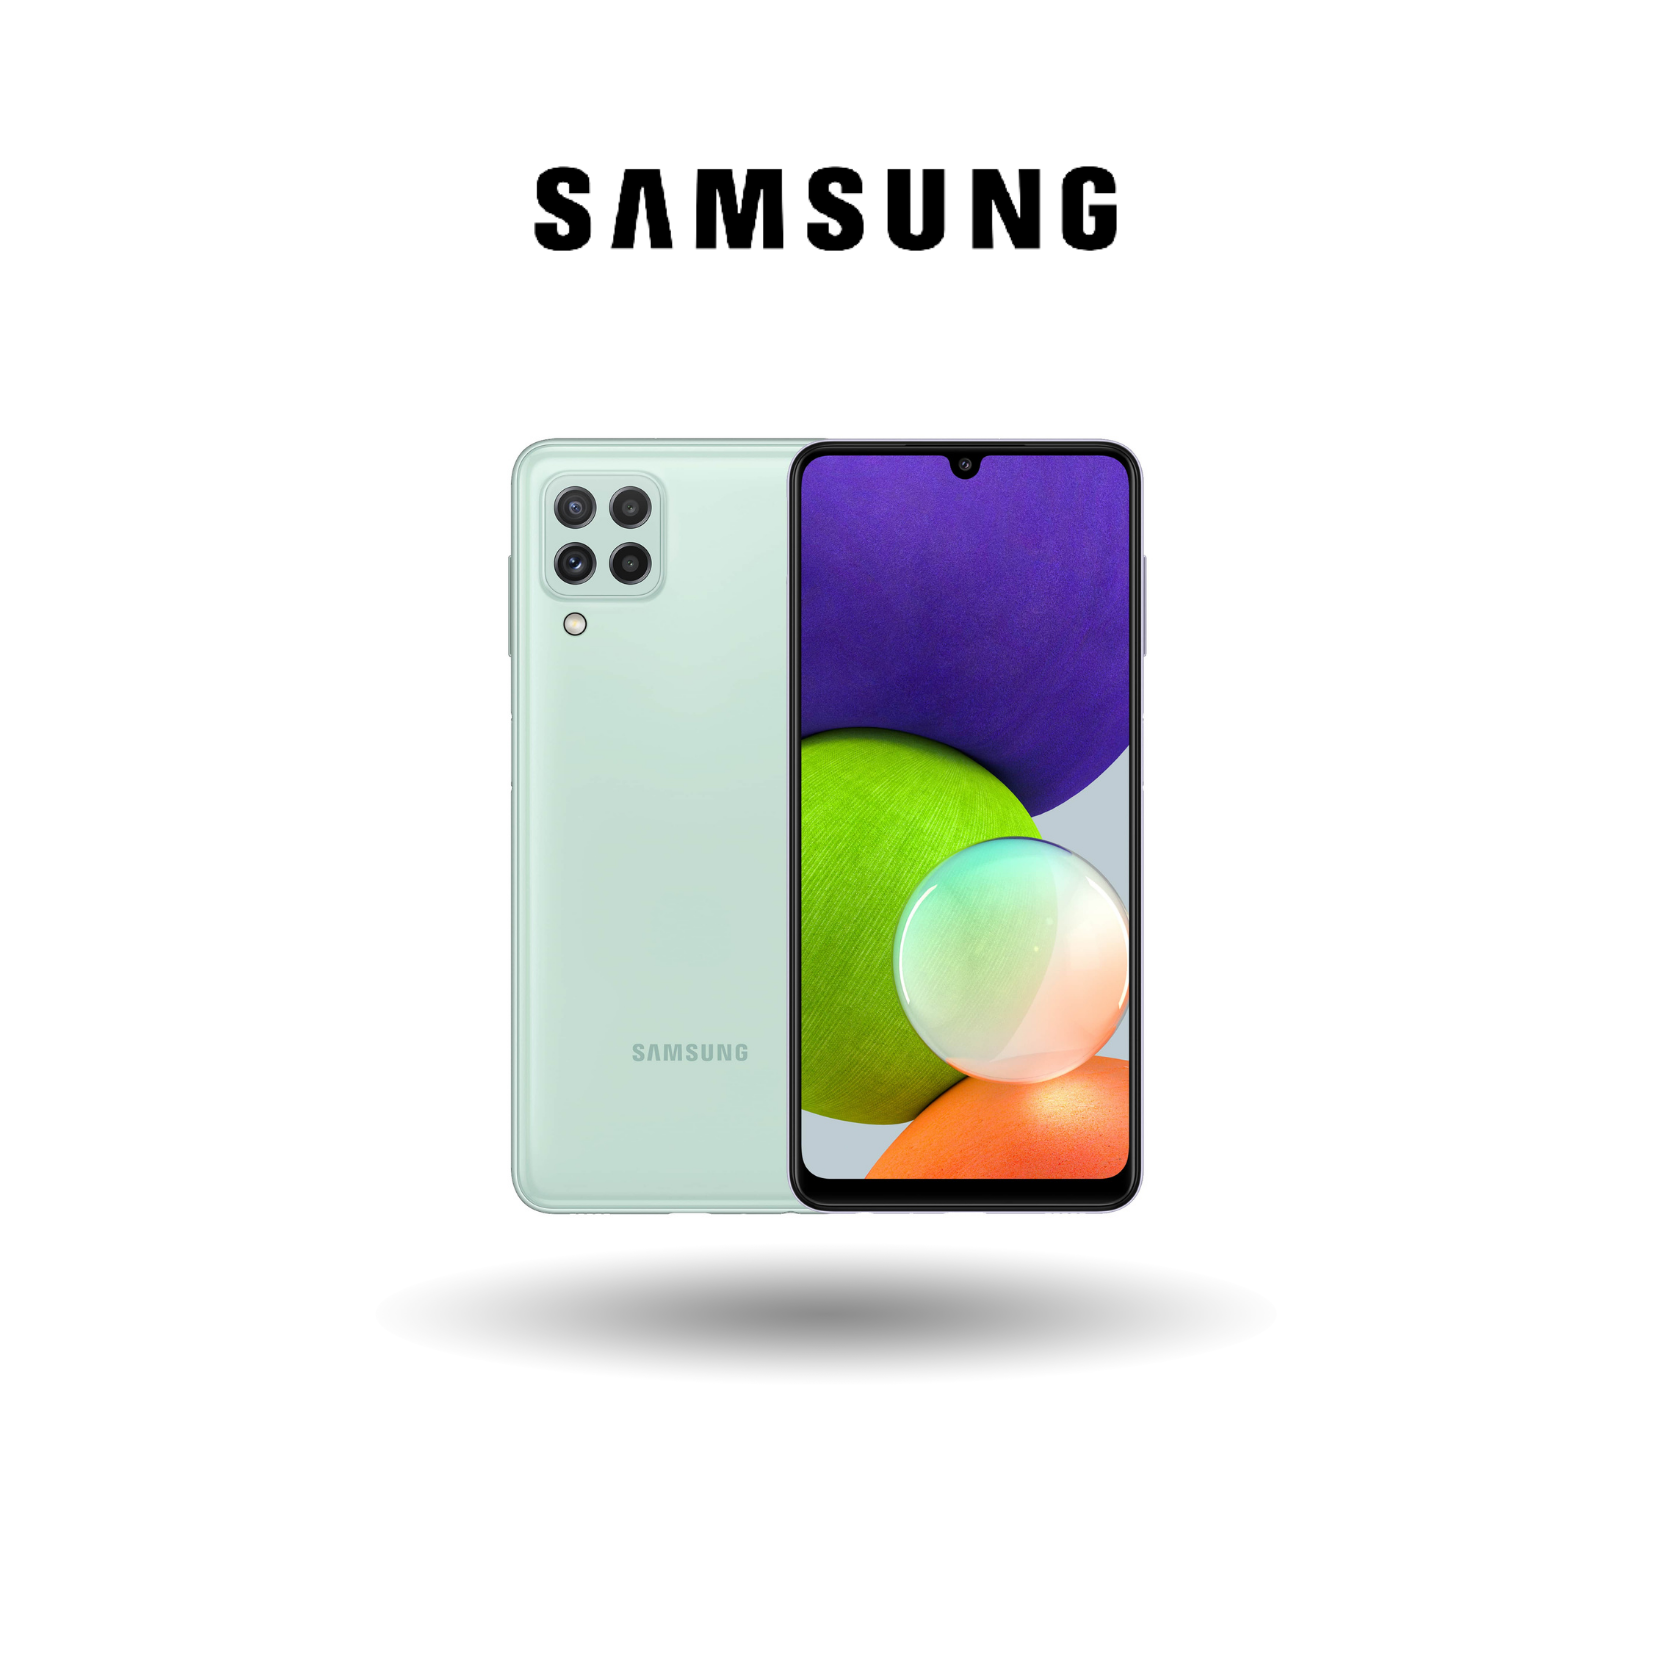 Samsung Galaxy A22 LTE - 6GB RAM + 128GB ROM Helio G80 6.4" HD+ HD+ Super AMOLED Display